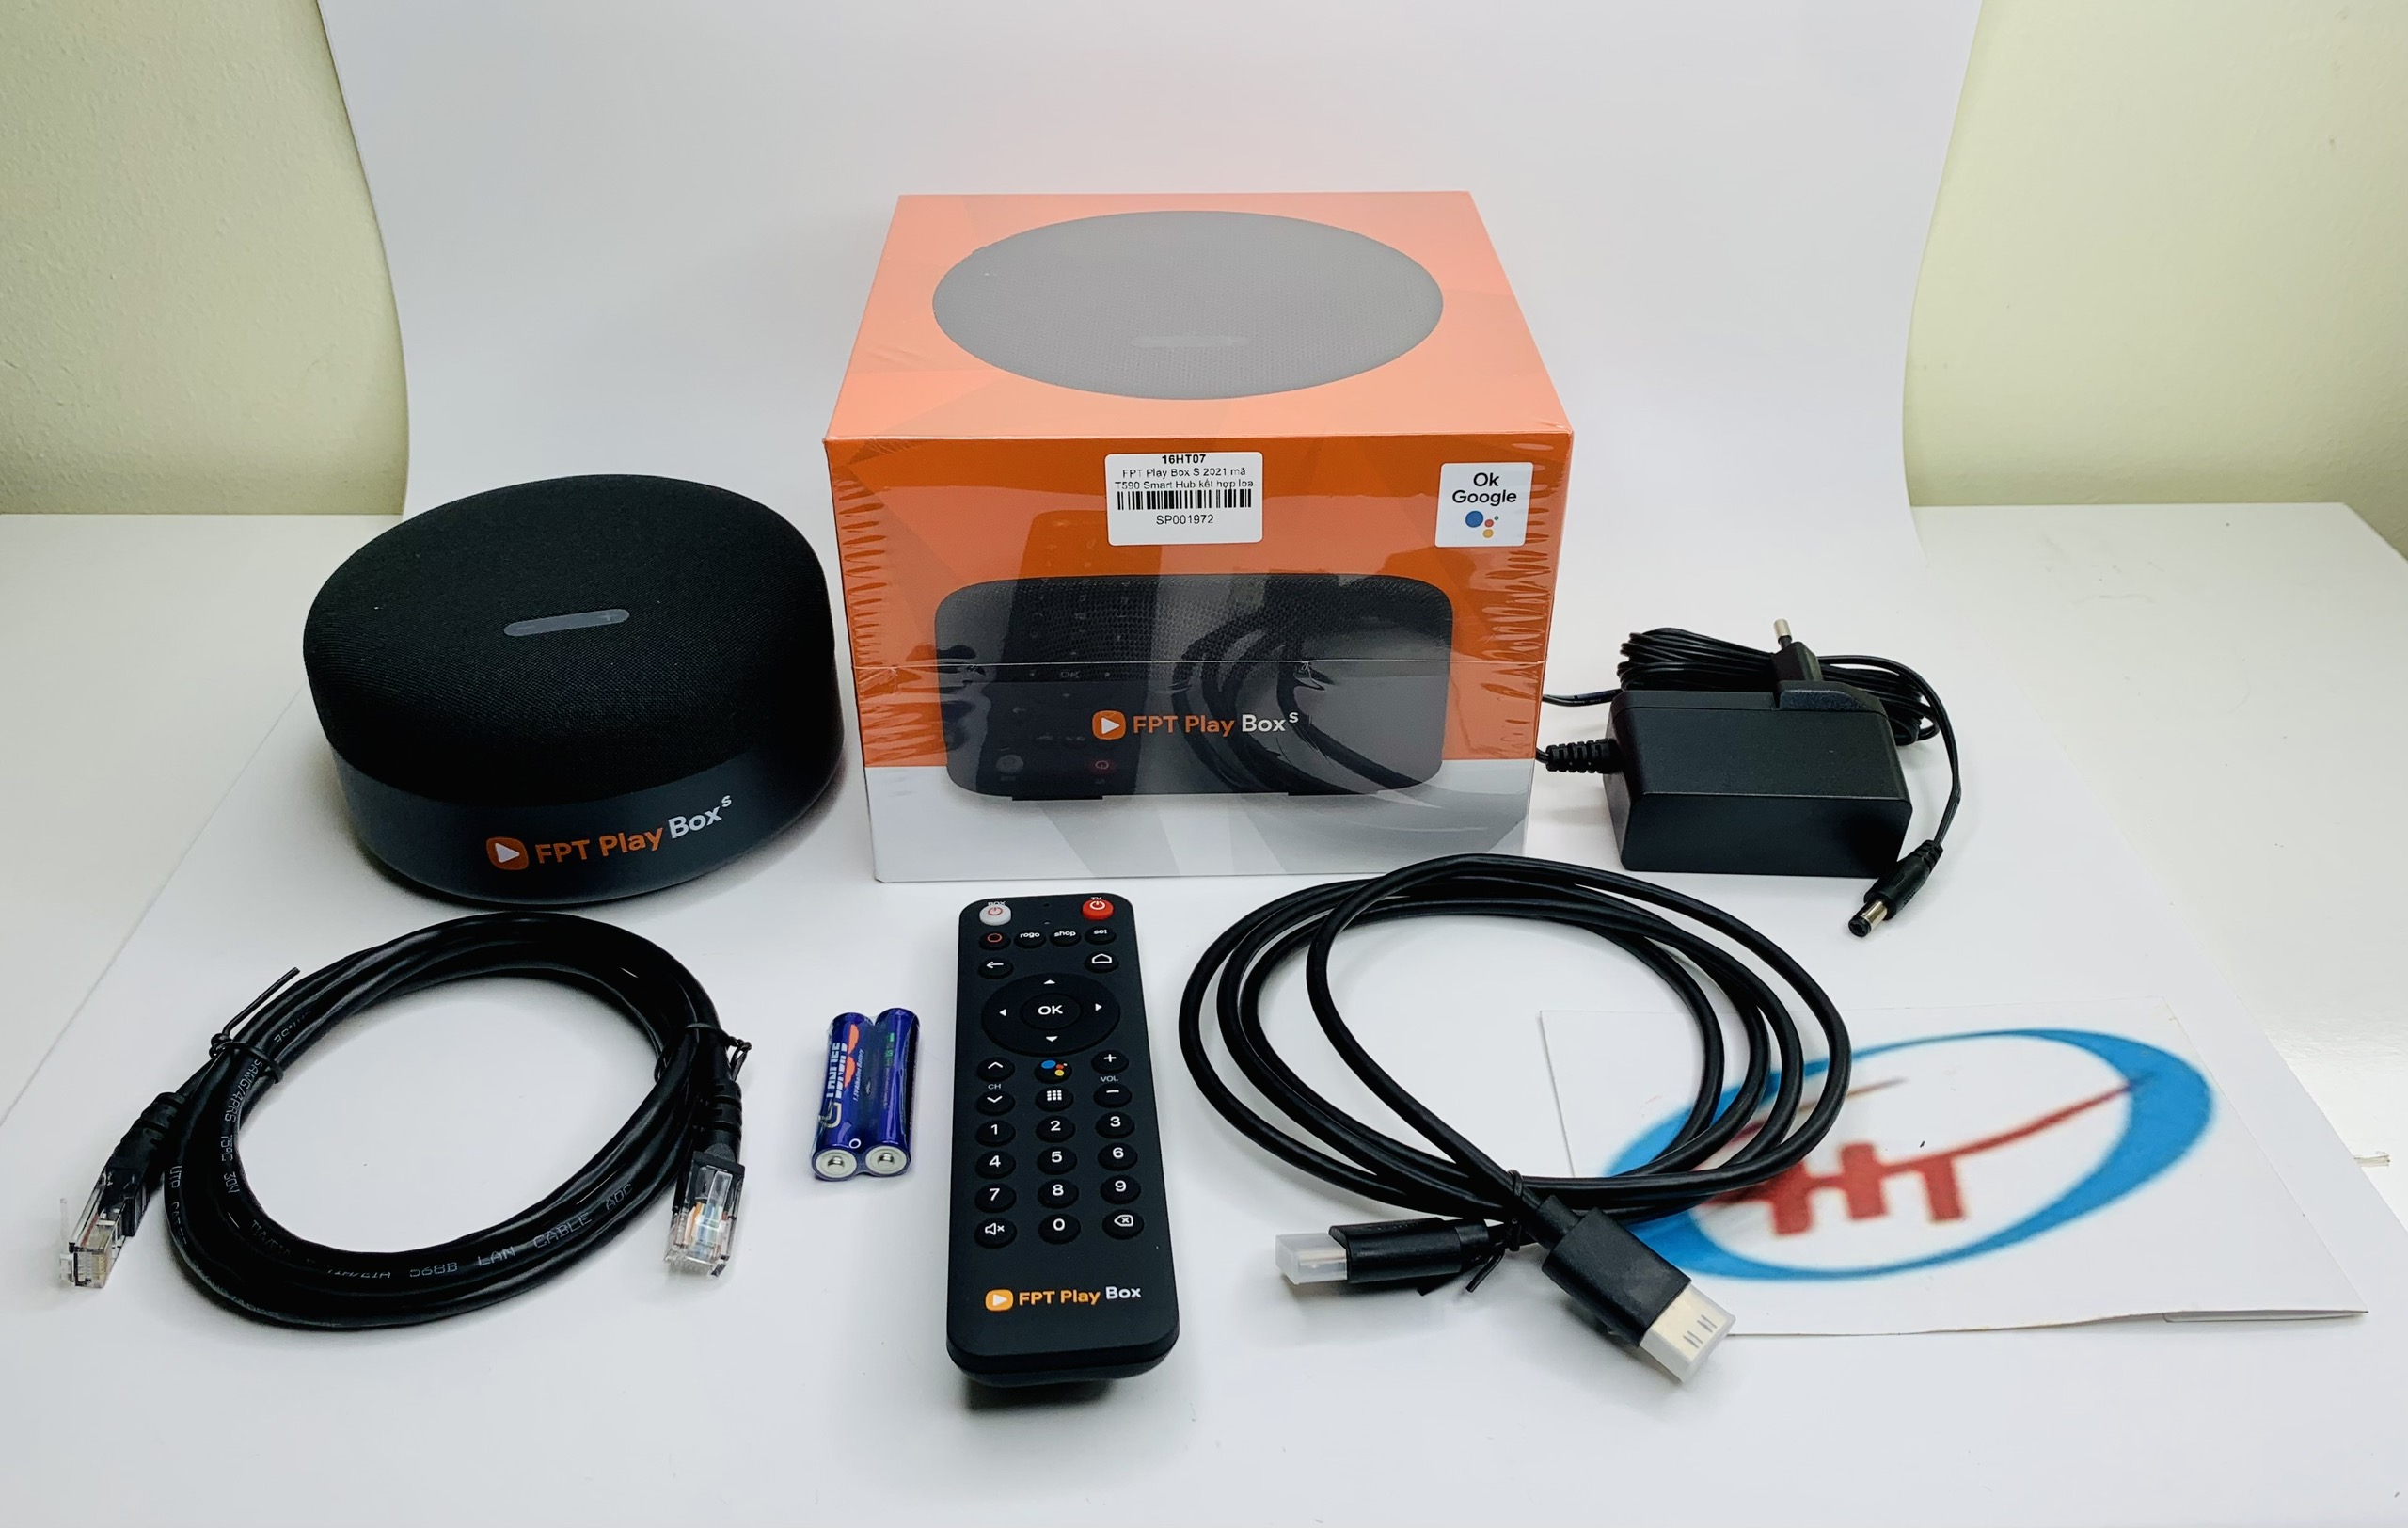 FPT Play Box S 2021 – Chính hãng FPT Telecom (Mã T590) – Kết hợp Tivi Box và Loa thông minh chính hãng.